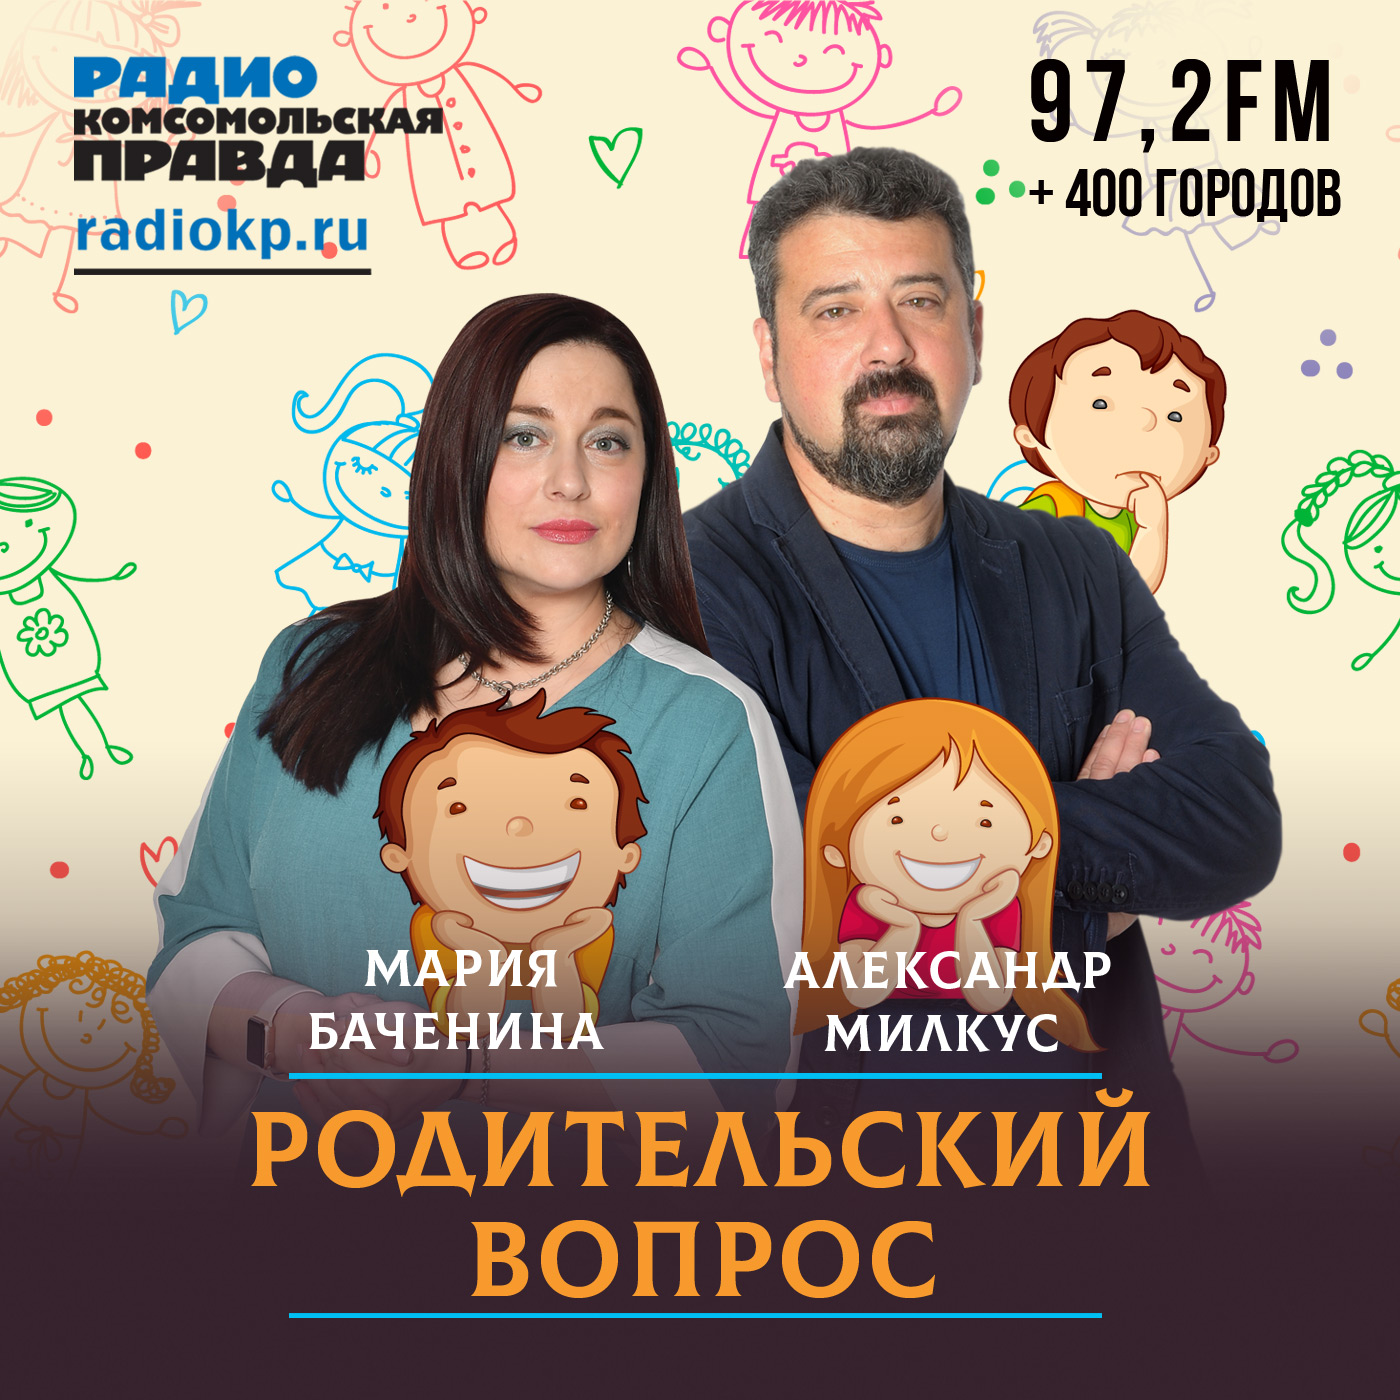 Родительский вопрос:Радио «Комсомольская правда»